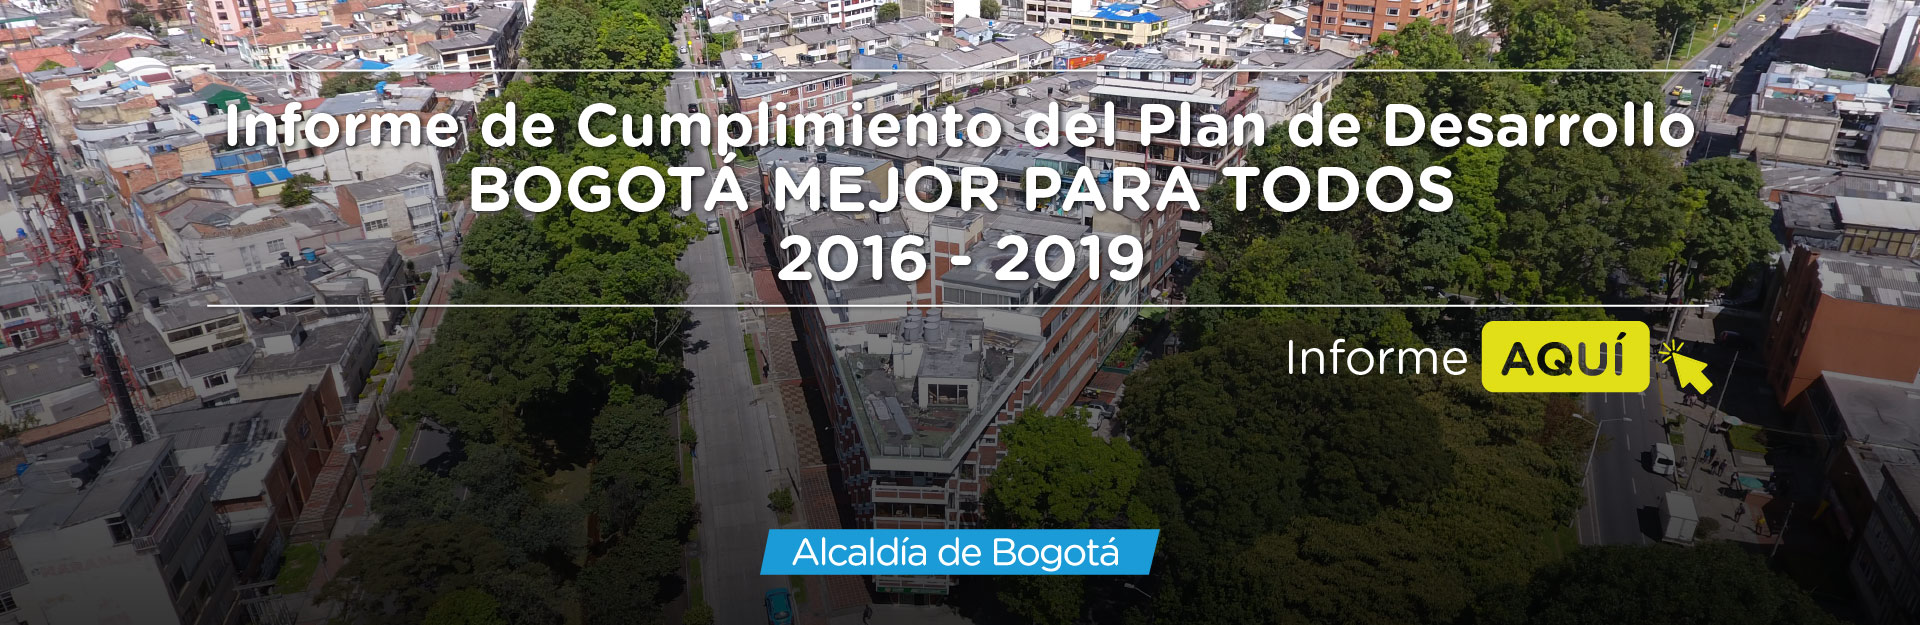 Informe de cumplimiento del plan de desarrollo “Bogotá mejor para Todos 2016-2020”